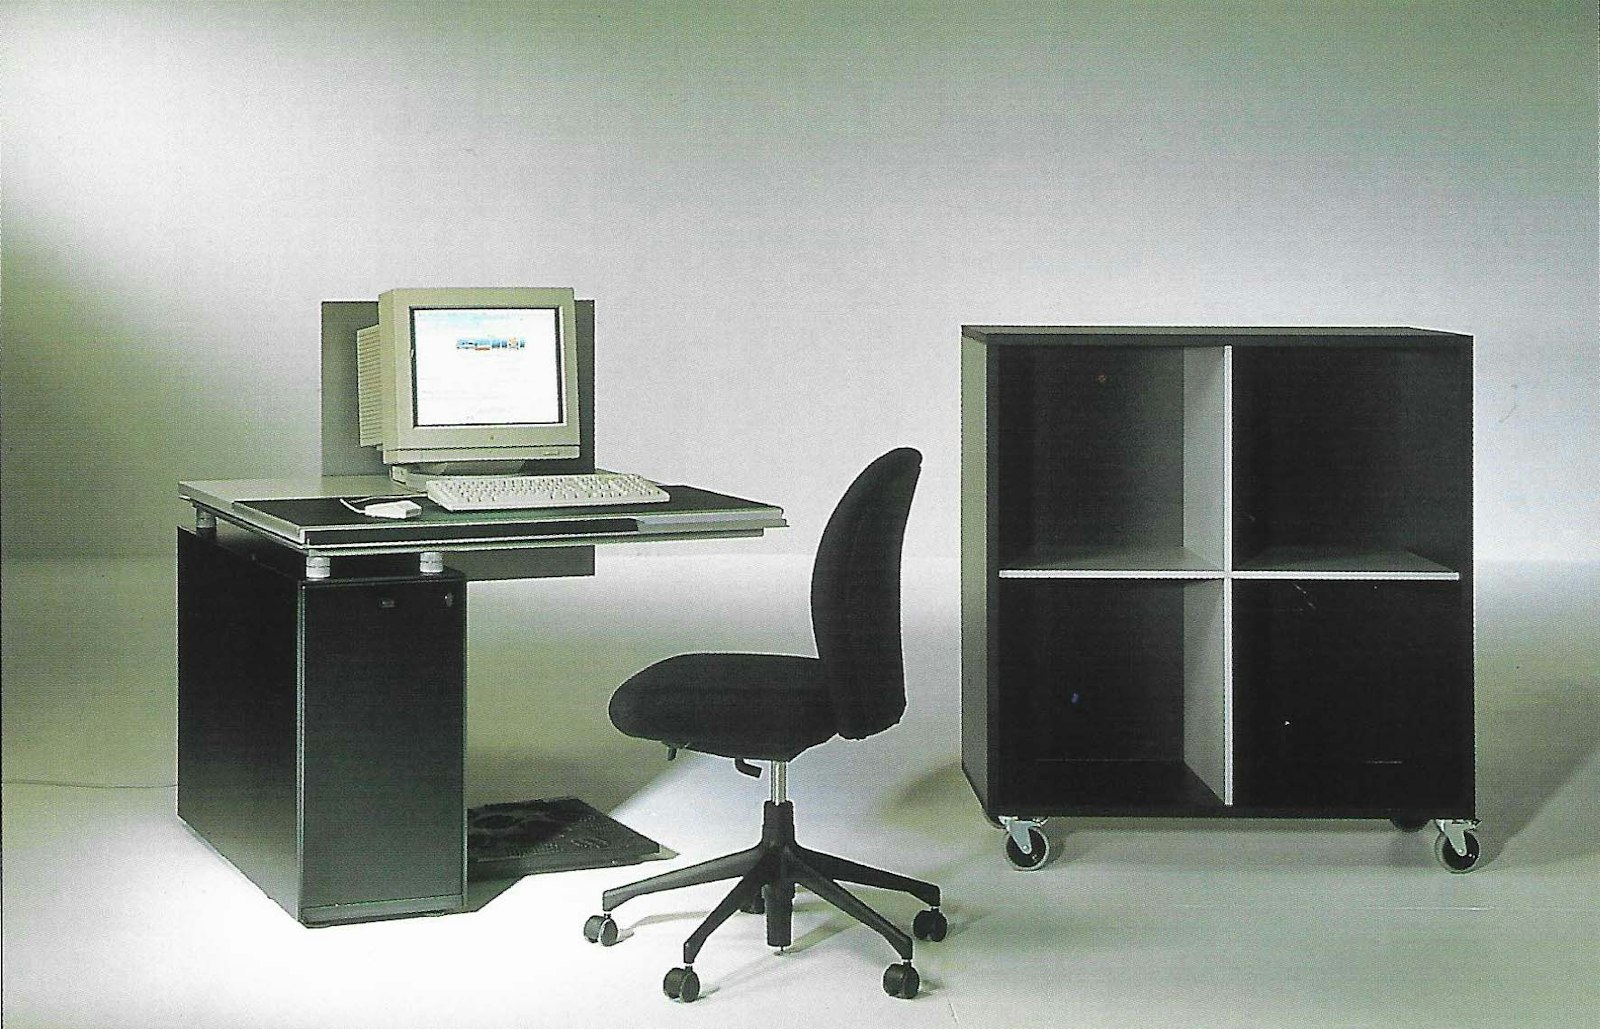 Desk M2/M. Design Bulo, 100 x 100 cm © Bart Van Leuven